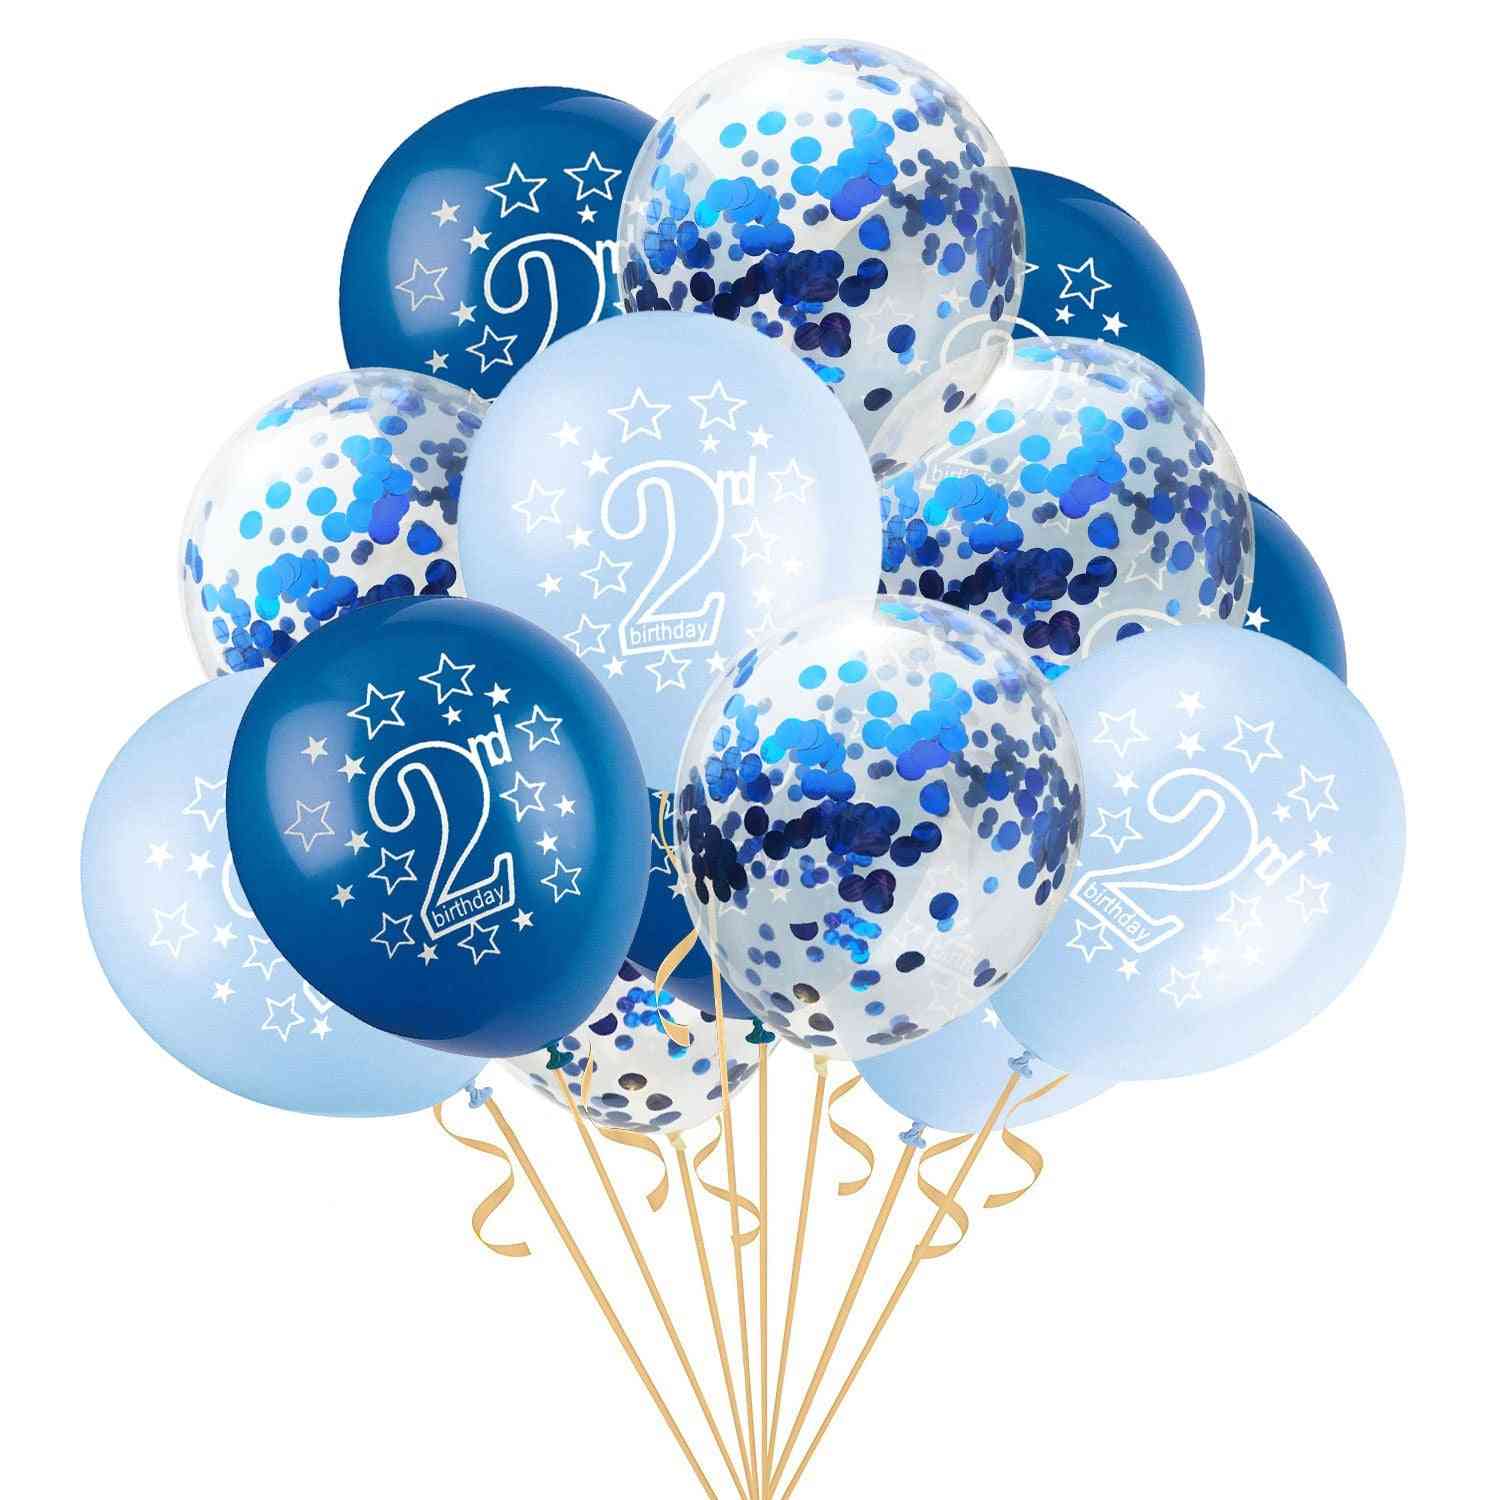 2de-happy birthday latex-ballonnen, happy second birthday-party ballonnen voor kinderen - blauw blauw